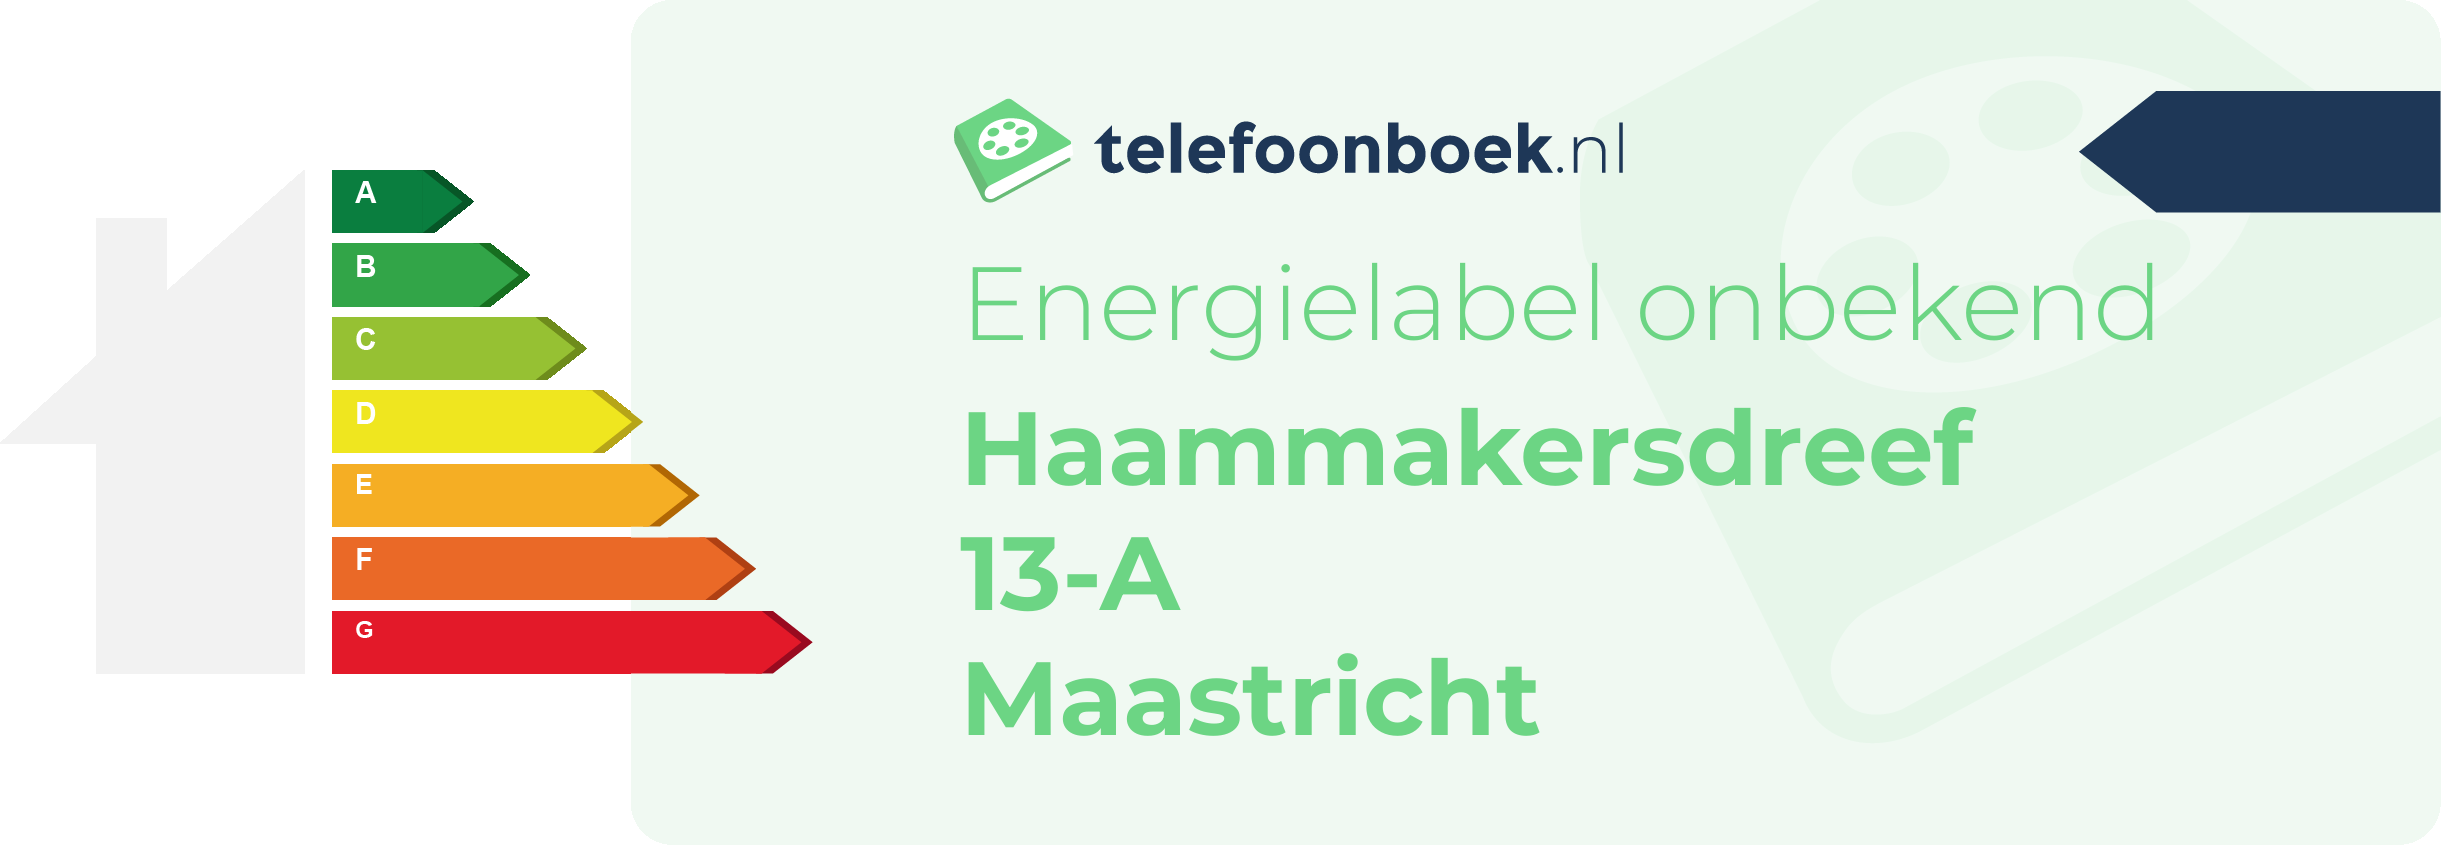 Energielabel Haammakersdreef 13-A Maastricht